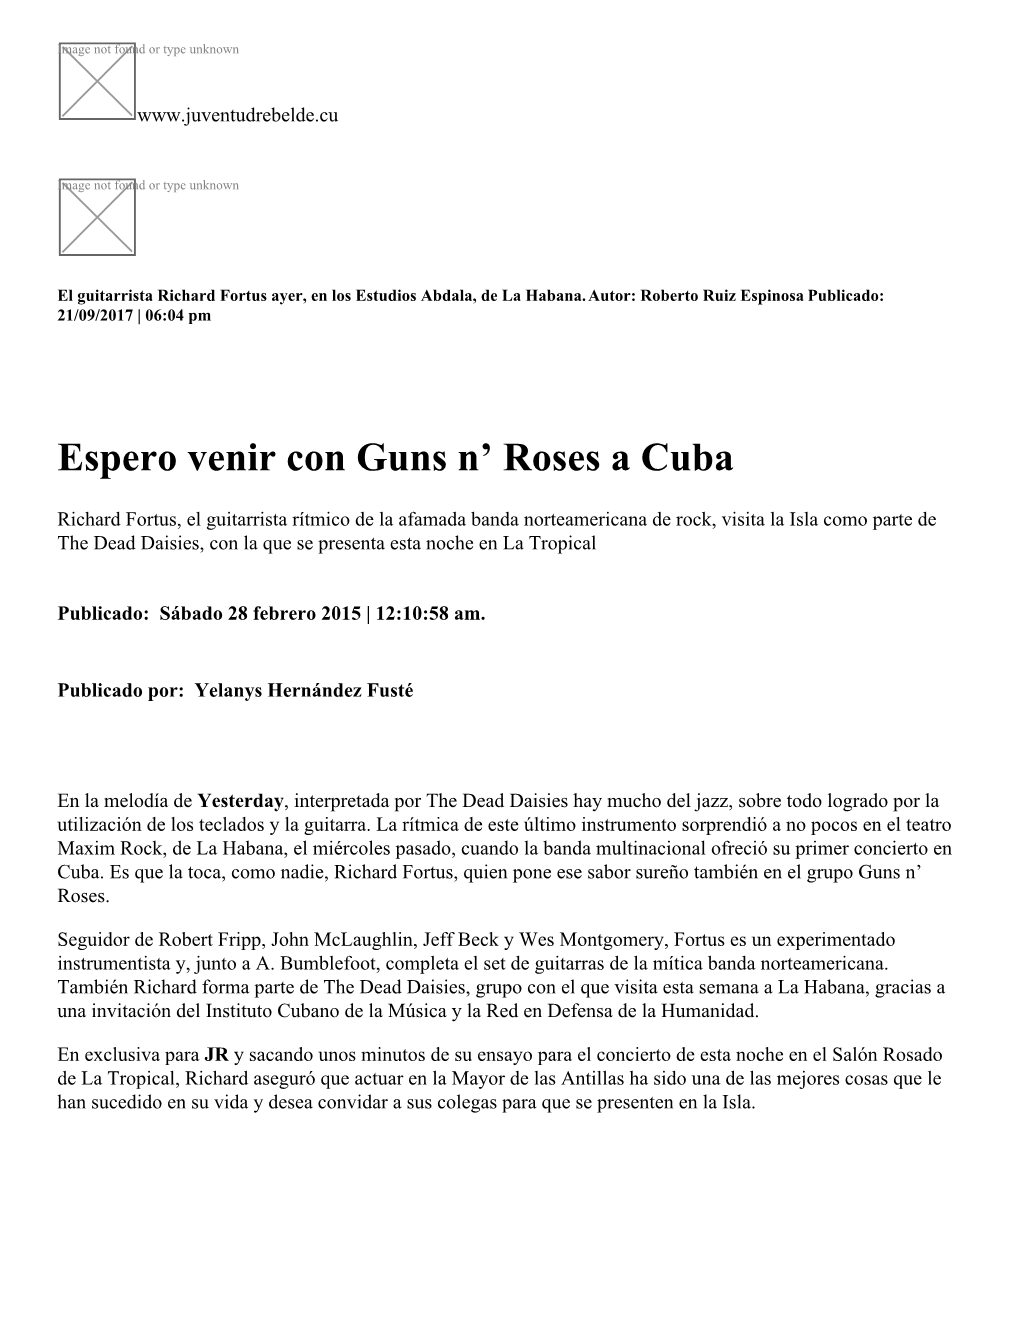 Espero Venir Con Guns N' Roses a Cuba